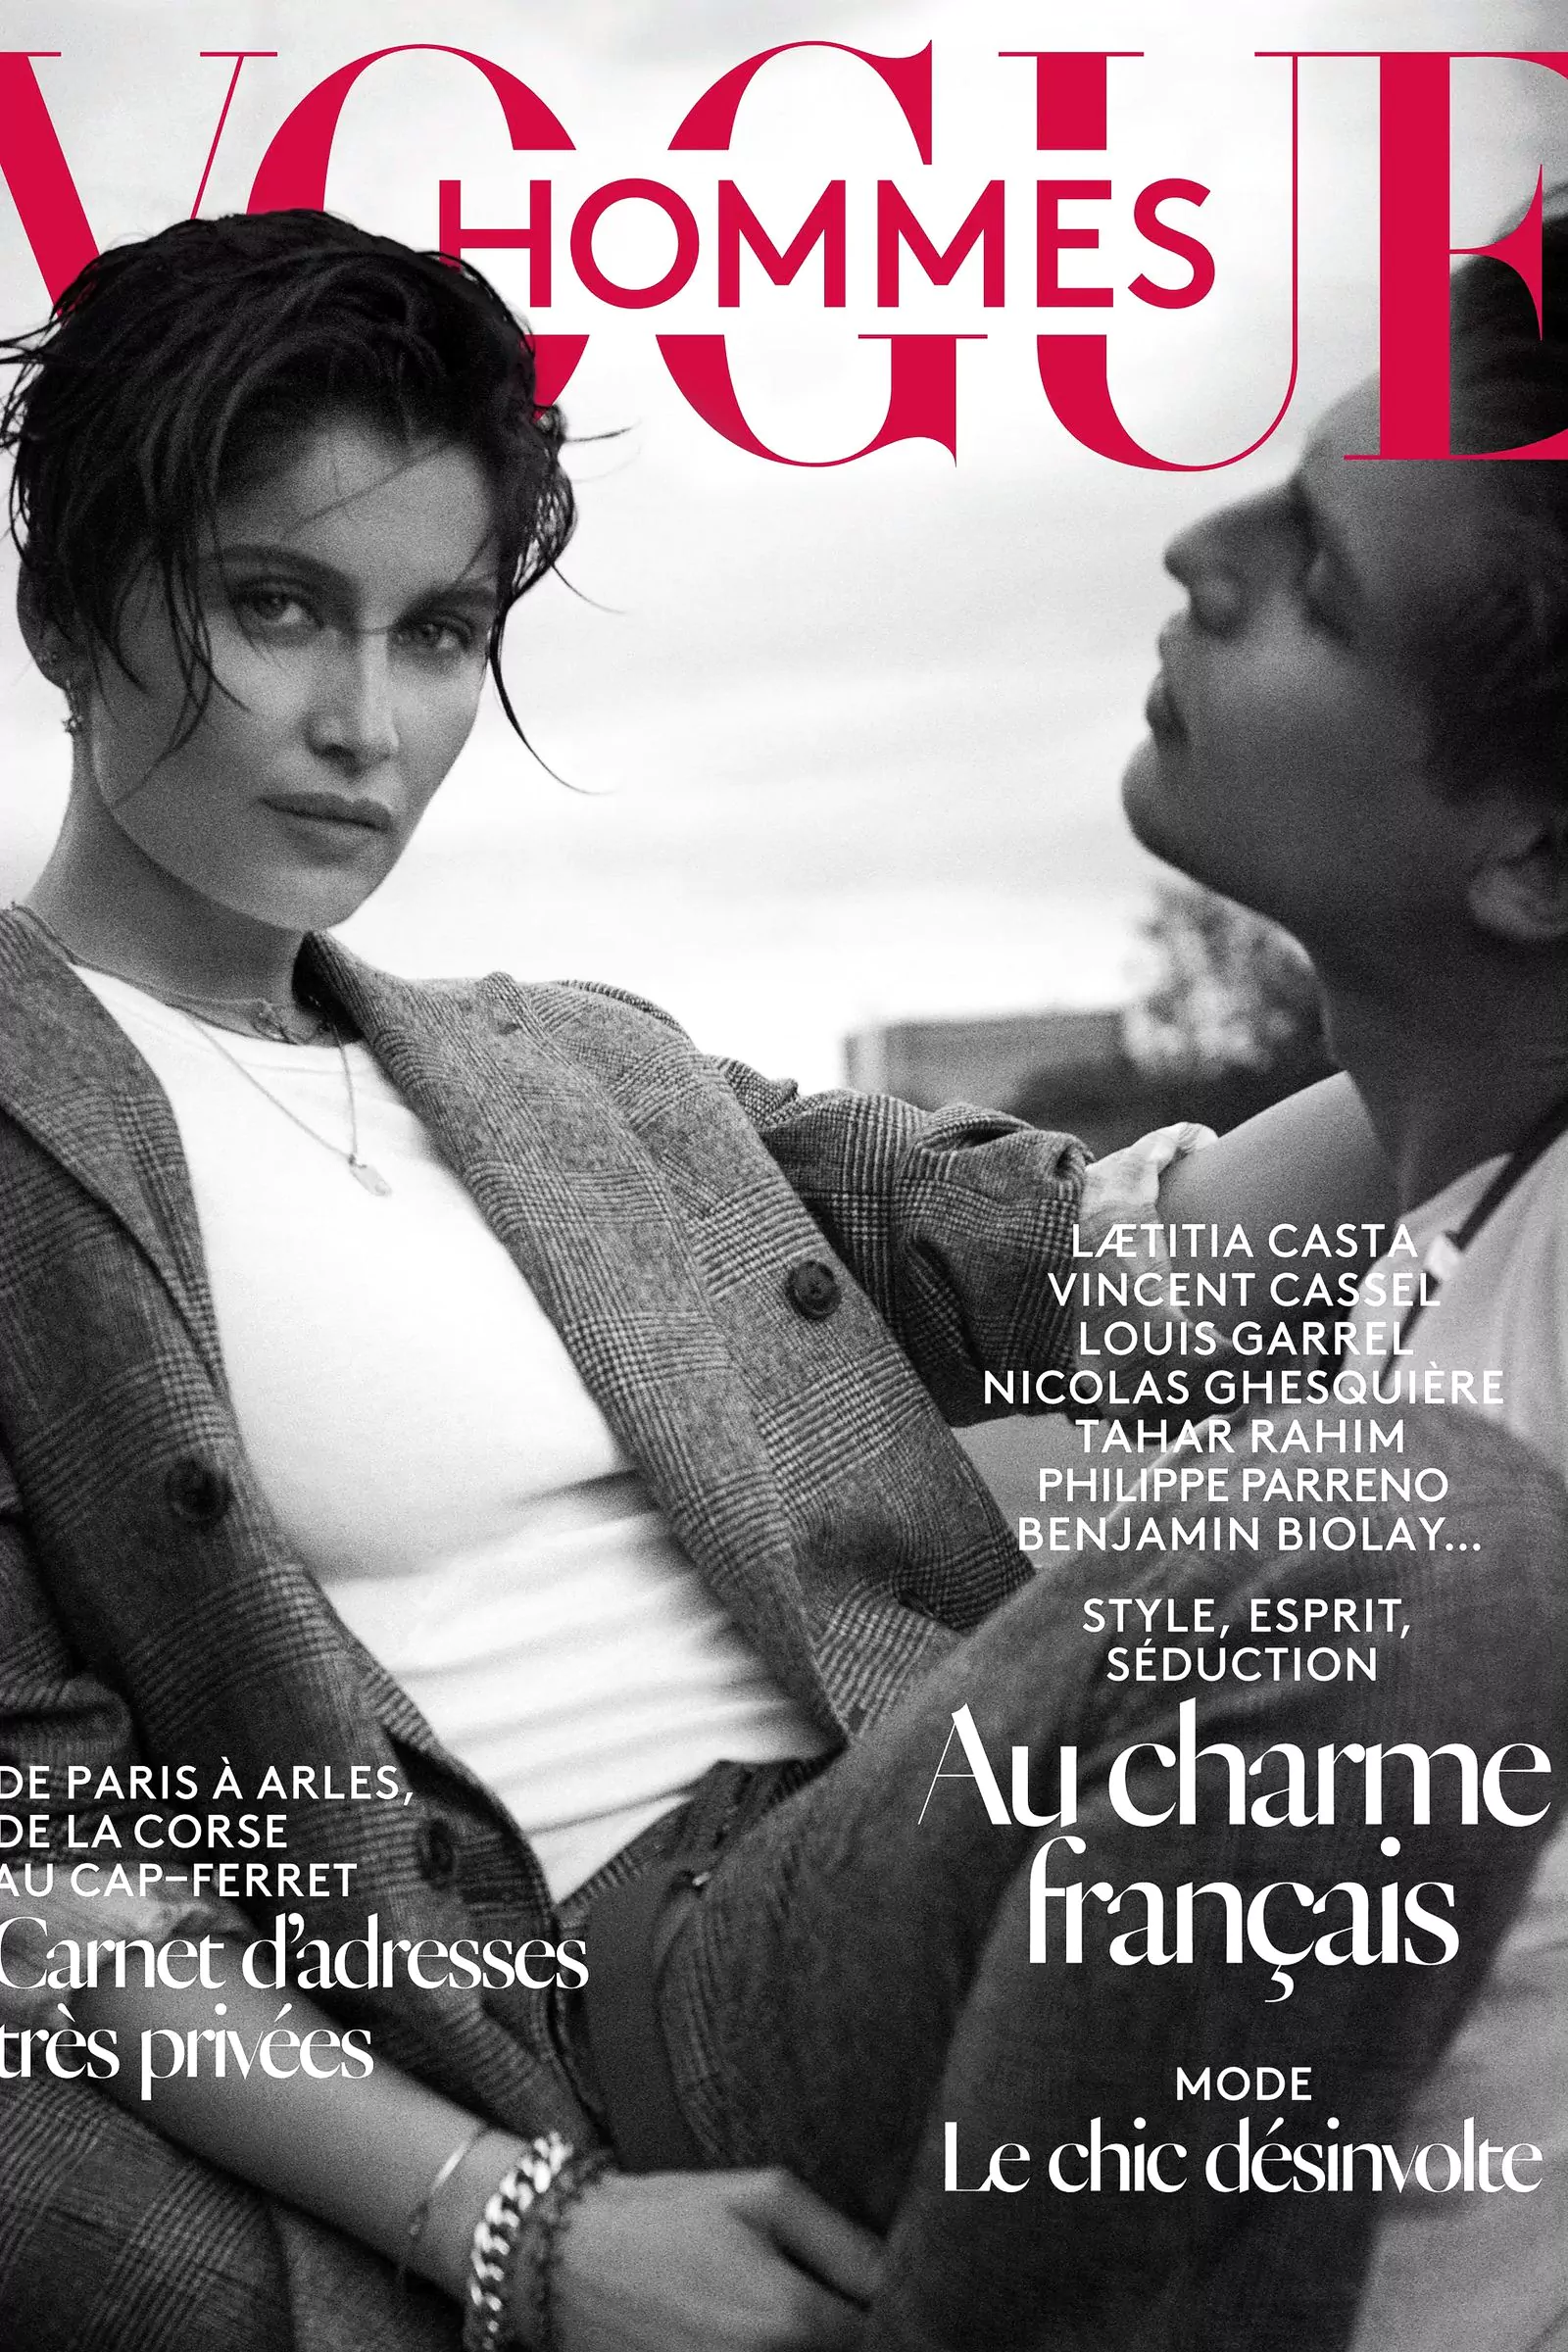 Летиция Каста на обложке журнала Vogue Hommes осень-зима 2015-2016